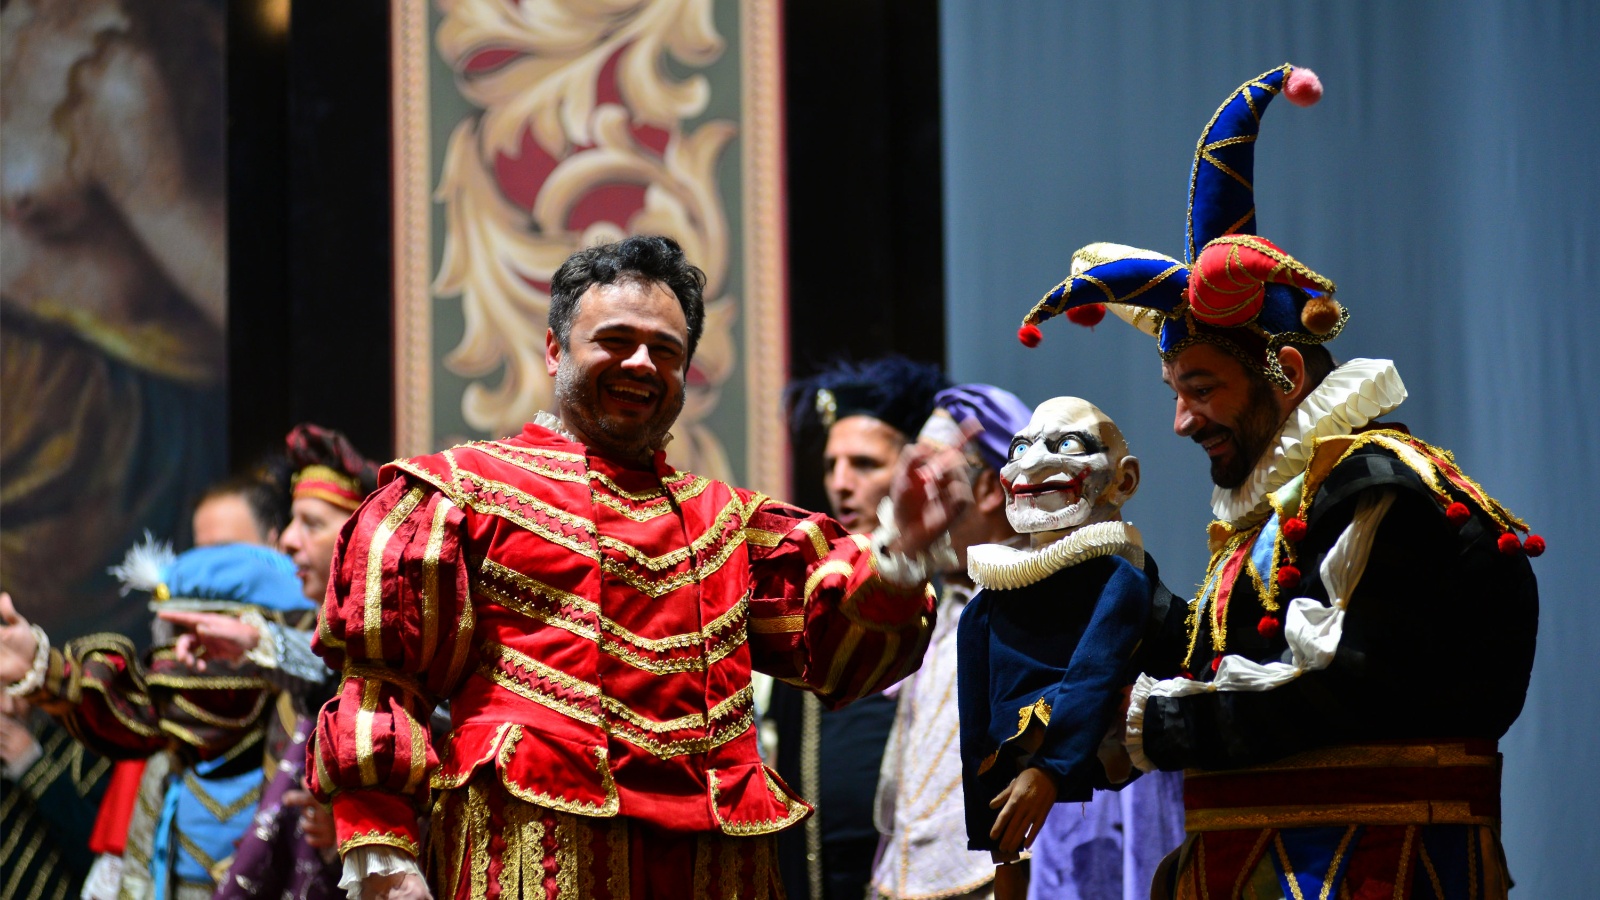 Besplatno zavirite na generalnu probu opere Rigoletto u zagrebačkom HNK